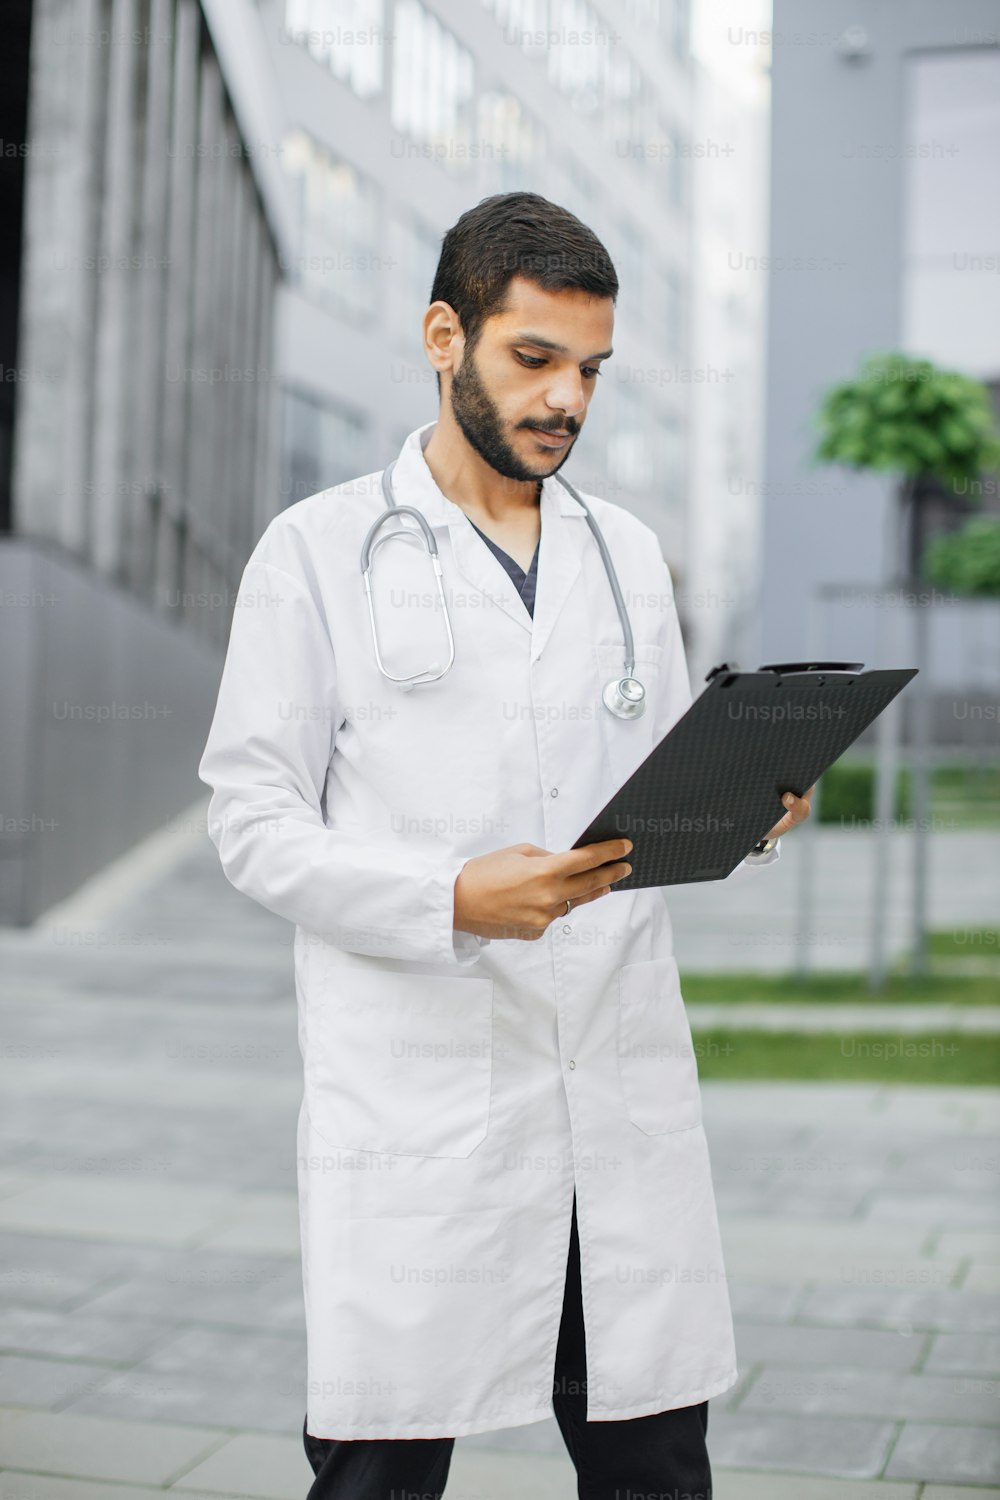 Ritratto di giovane medico interno medico maschio focalizzato intelligente che legge i dati sugli appunti della cartella, in piedi fuori dall'edificio ospedaliero moderno. Concetto di medicina, formazione e assistenza sanitaria